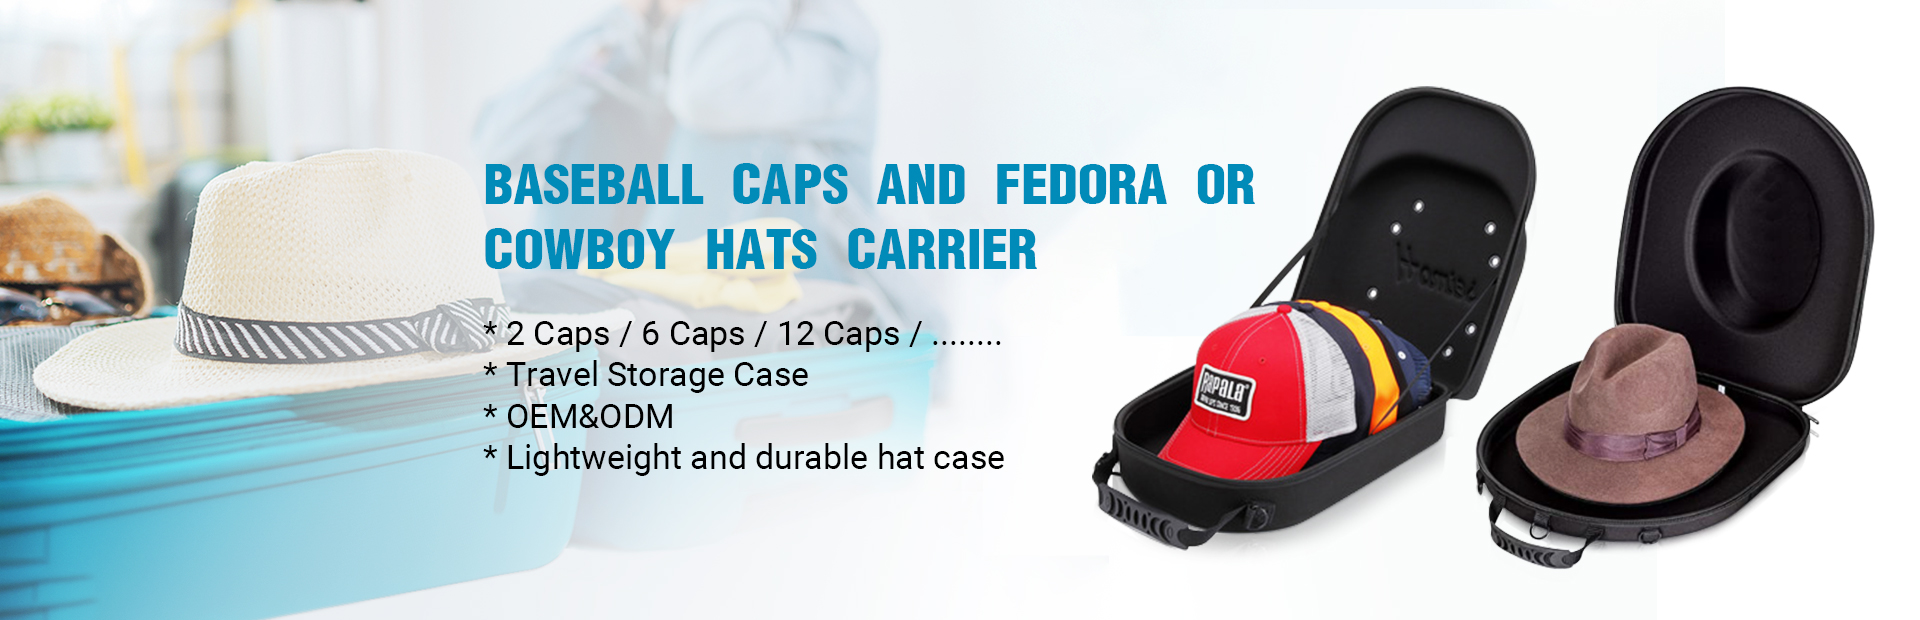 Cel mai bine vândut Husă pentru pălărie Fedora, personalizată, turnată în EVA